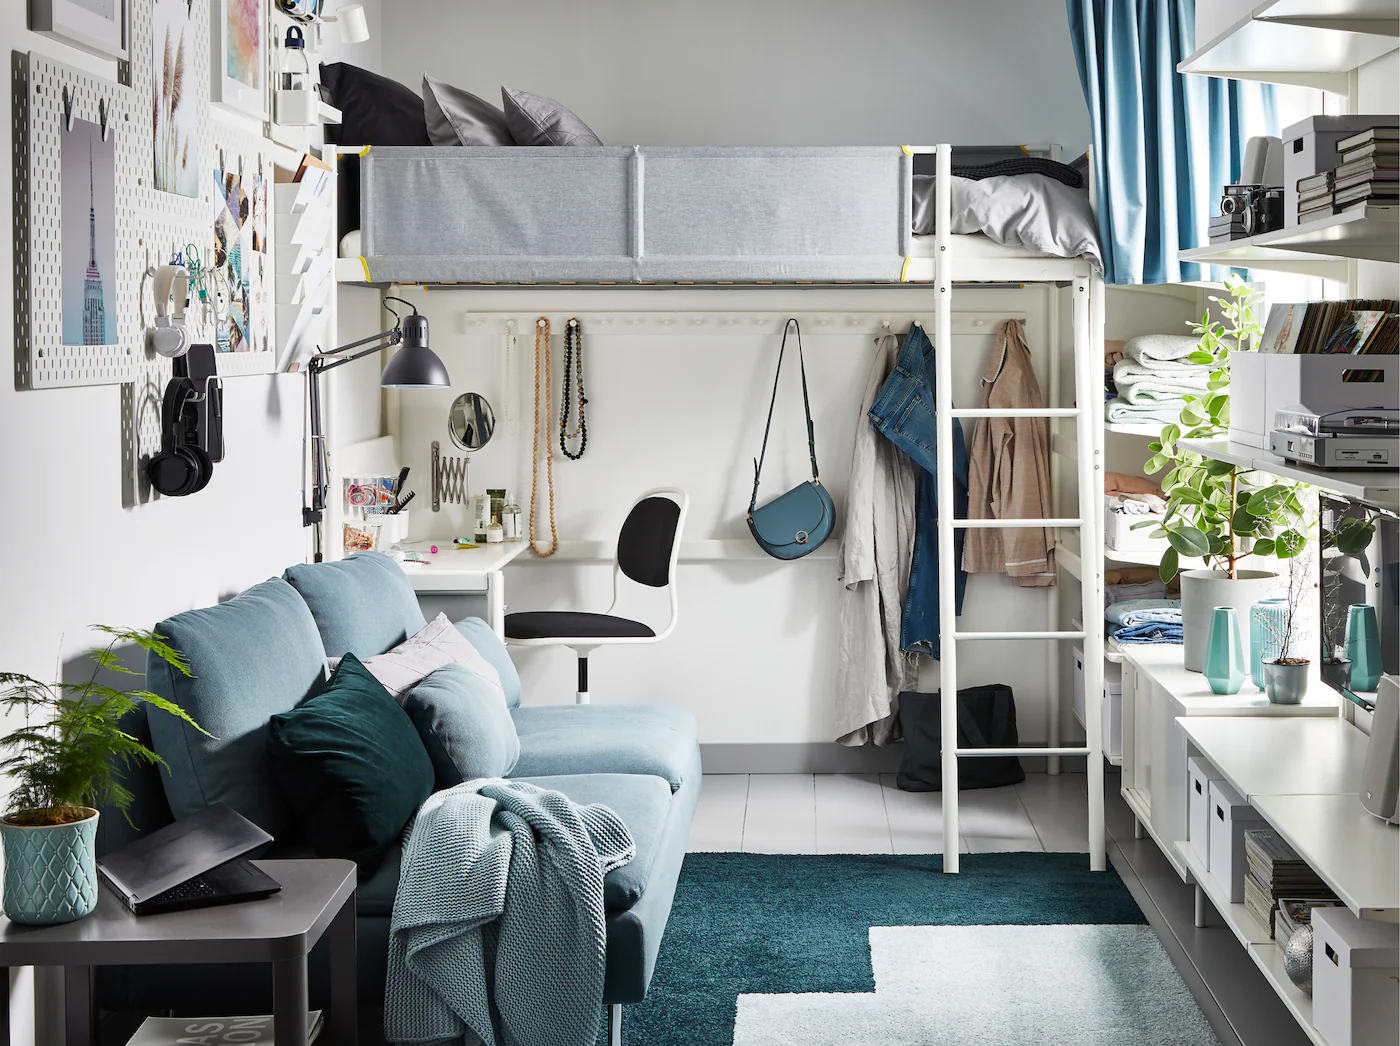 Ikea international: практичные идеи бренда в 3 маленьких испанских квартирах